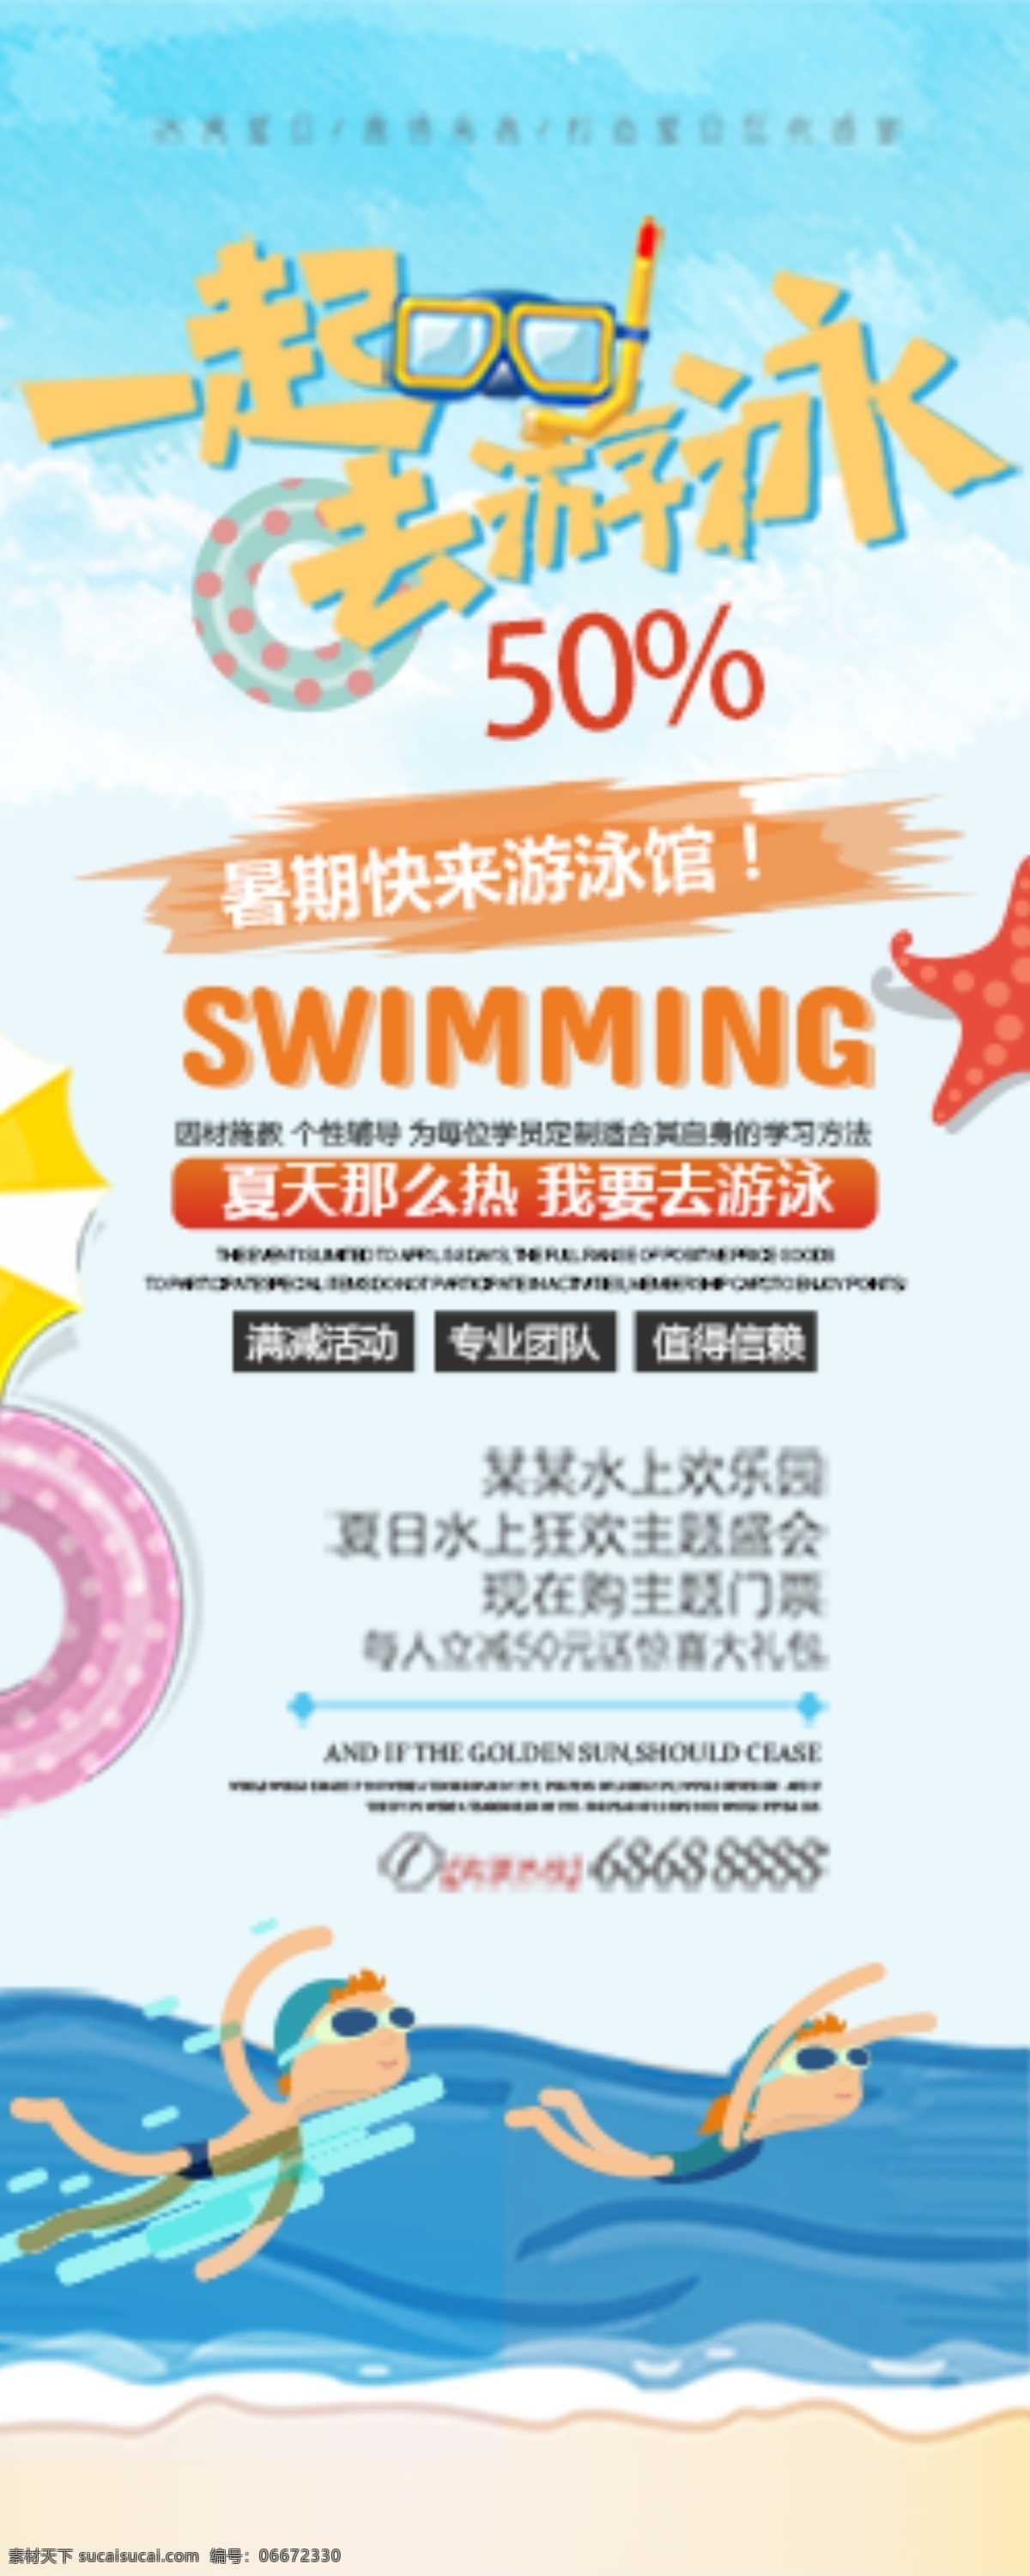 暑期游泳 暑期 游泳 促销 卡通人物 展架 广告 共享素材